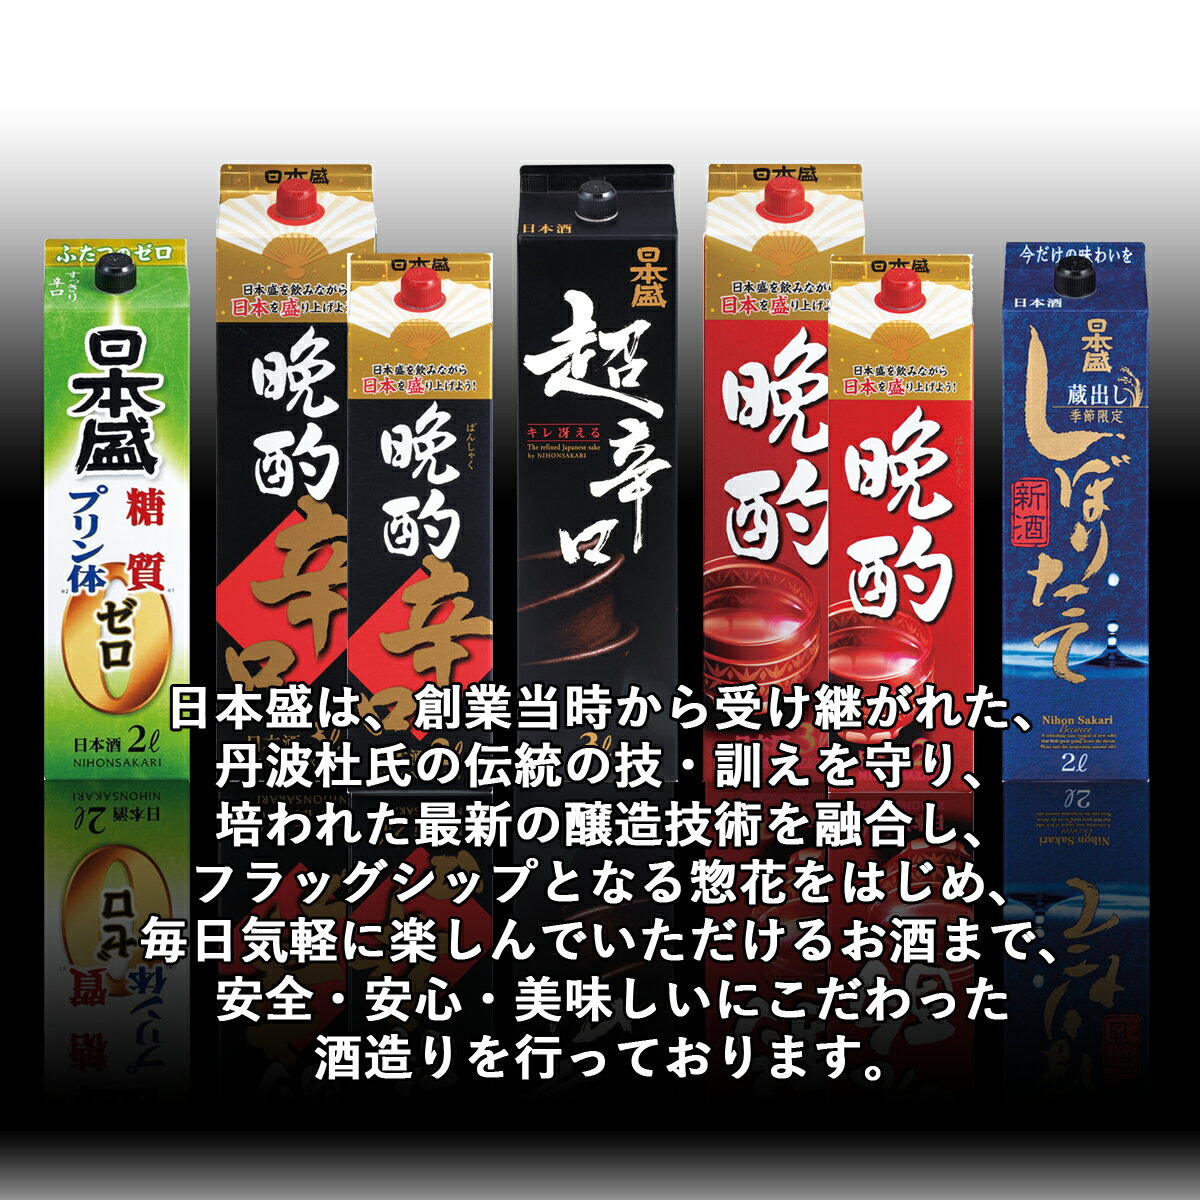 日本酒 日本盛 糖質ゼロプリン体ゼロ パック 2L(2000ml) 6本入 2ケース(12本) 送料無料(一部地域除く)